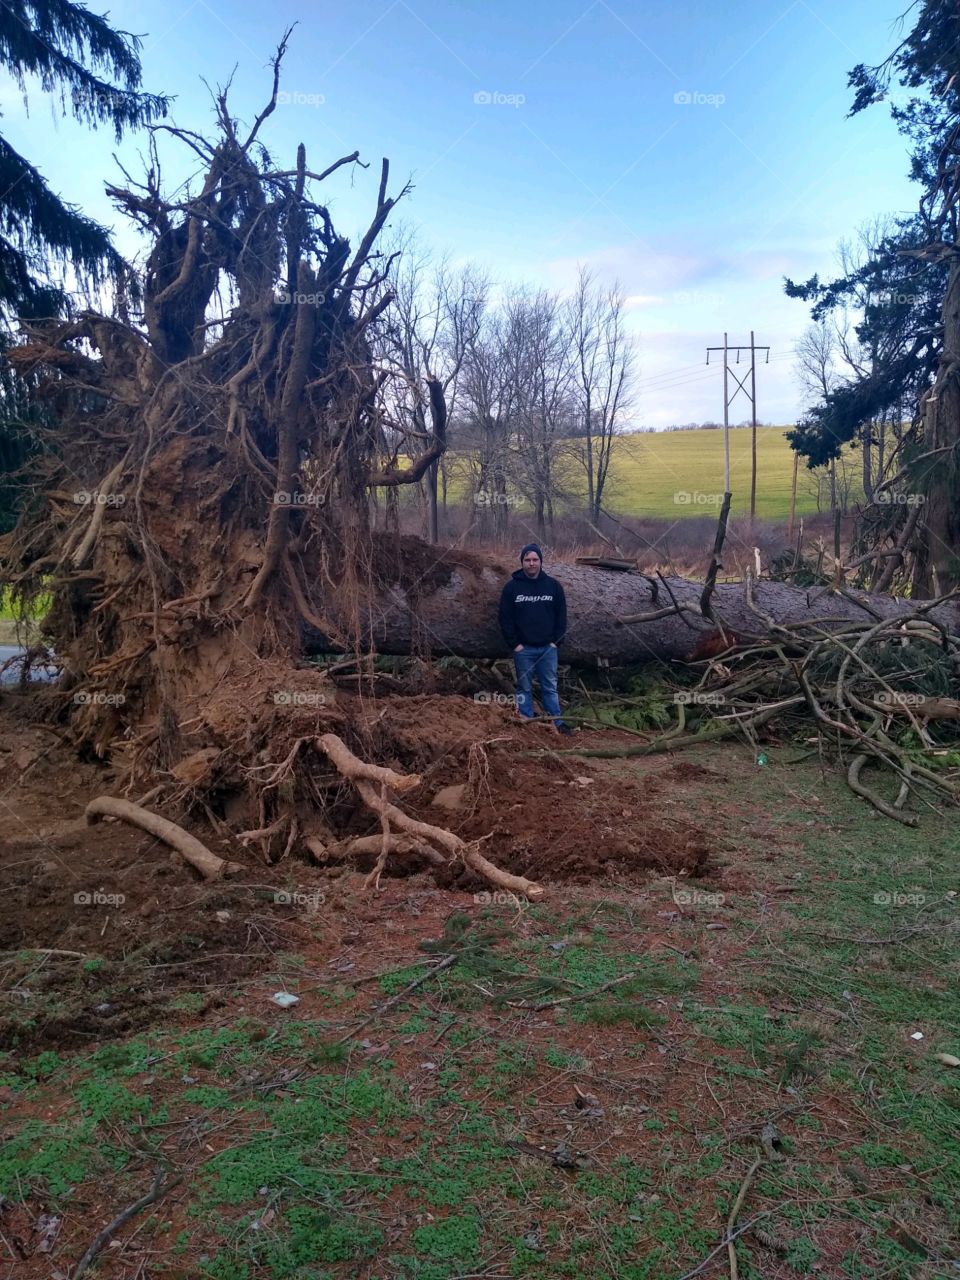 giant tree fallen over